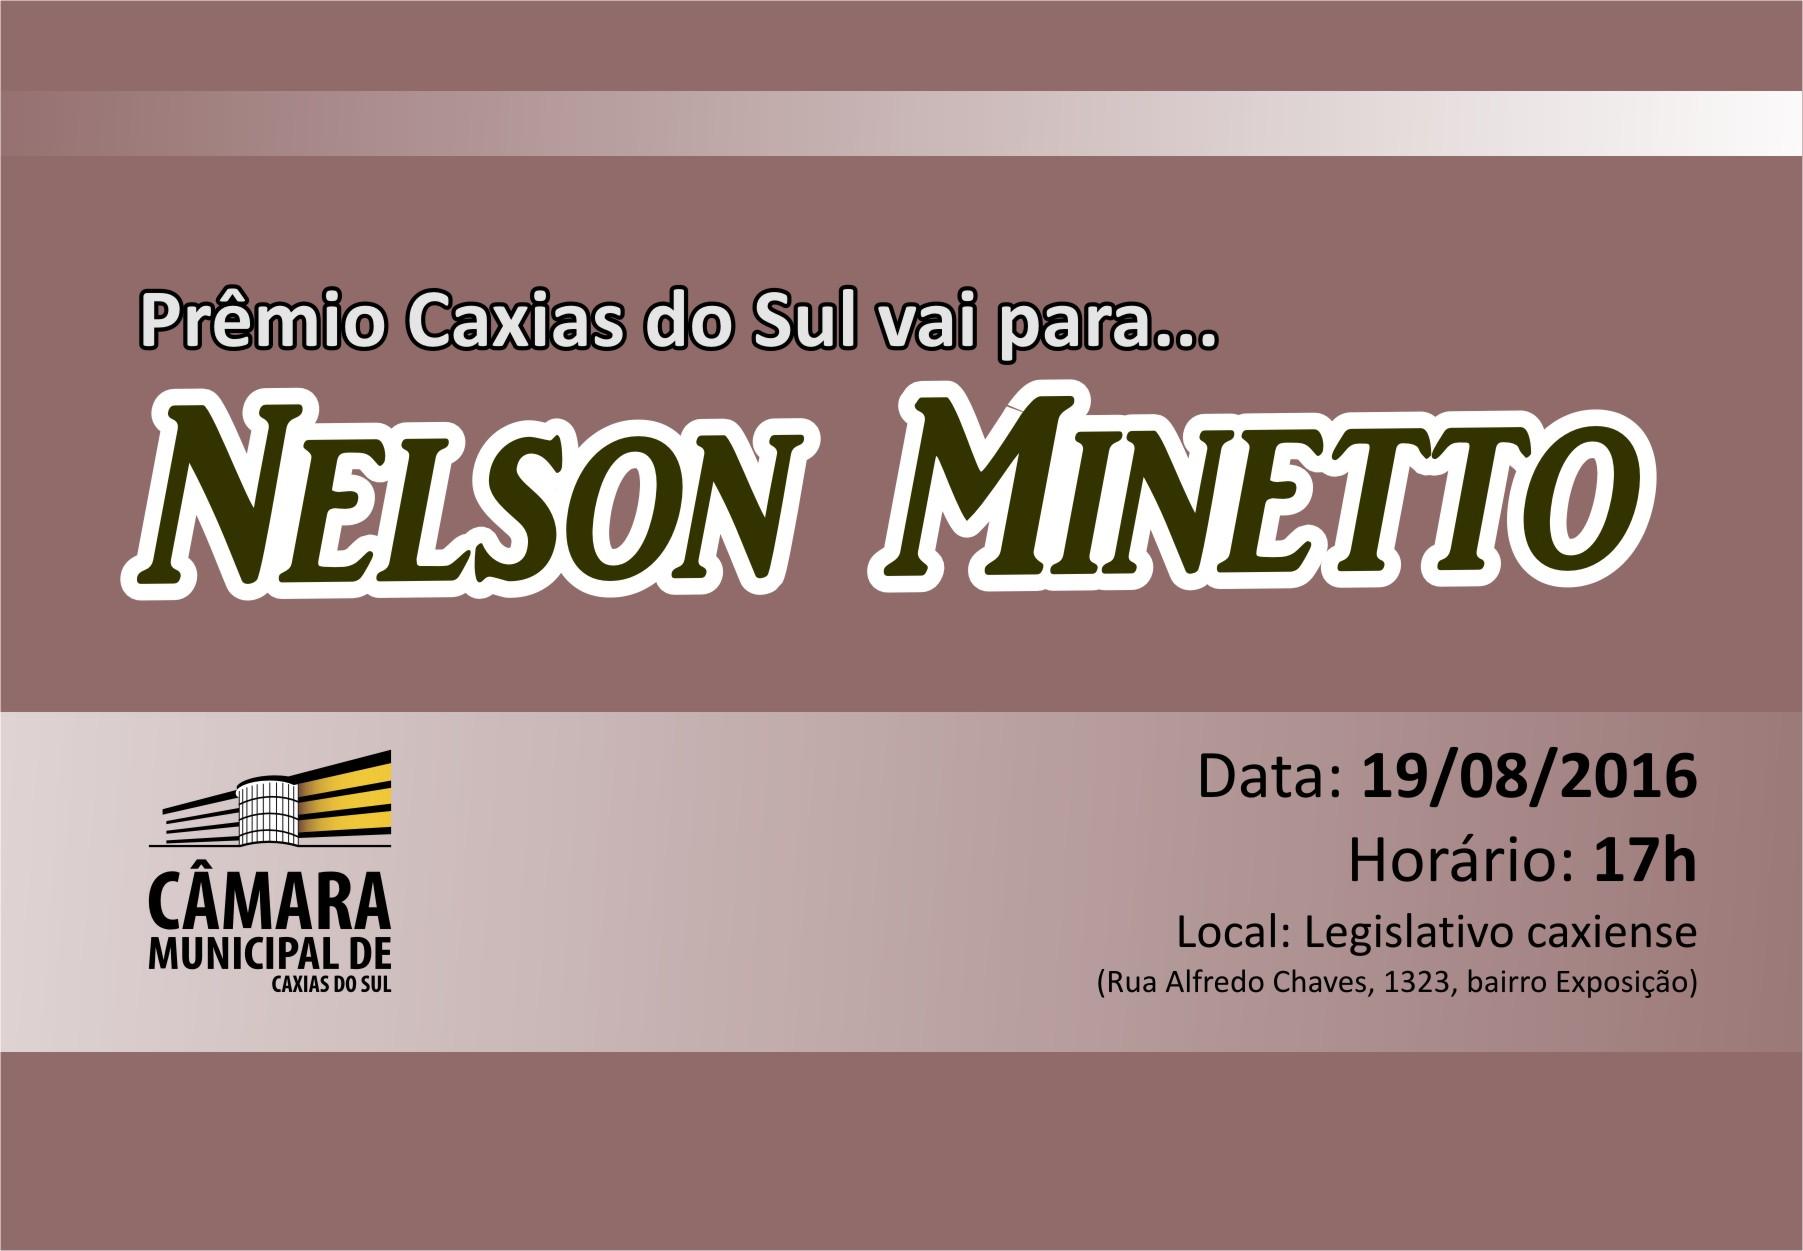 Empresário Nelson Minetto será agraciado com o Prêmio Caxias do Sul nesta sexta-feira